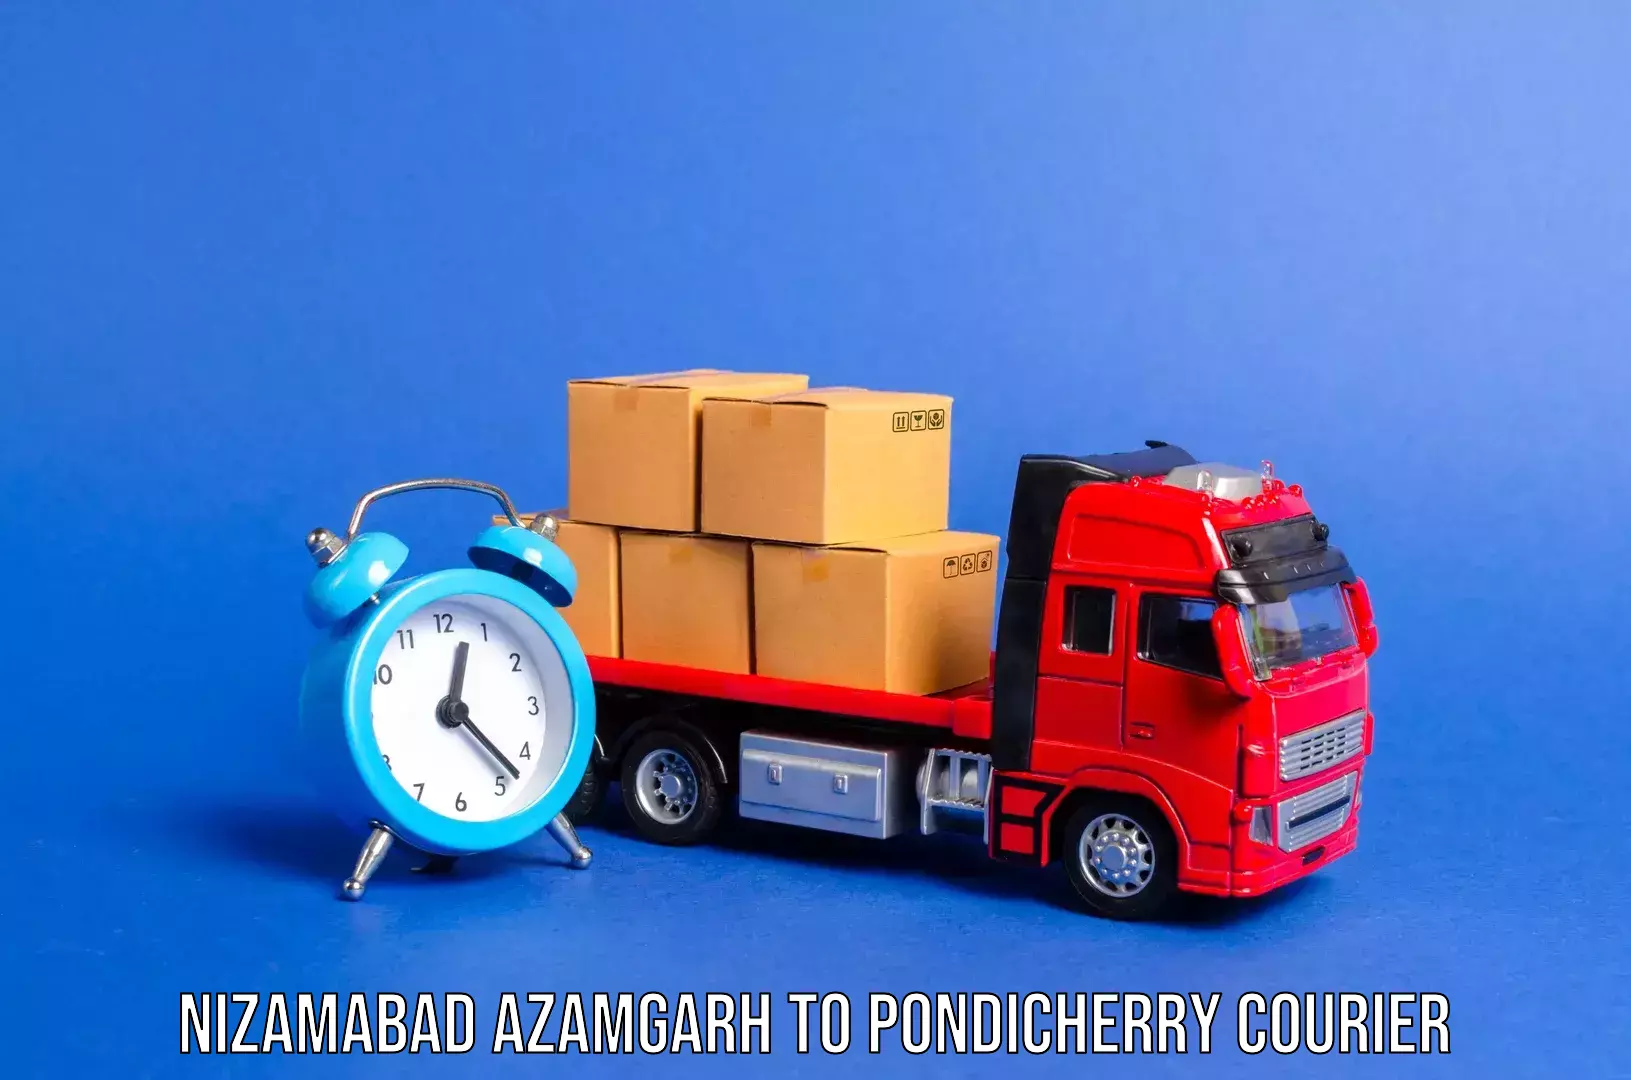 Luggage transport company Nizamabad Azamgarh to Karaikal